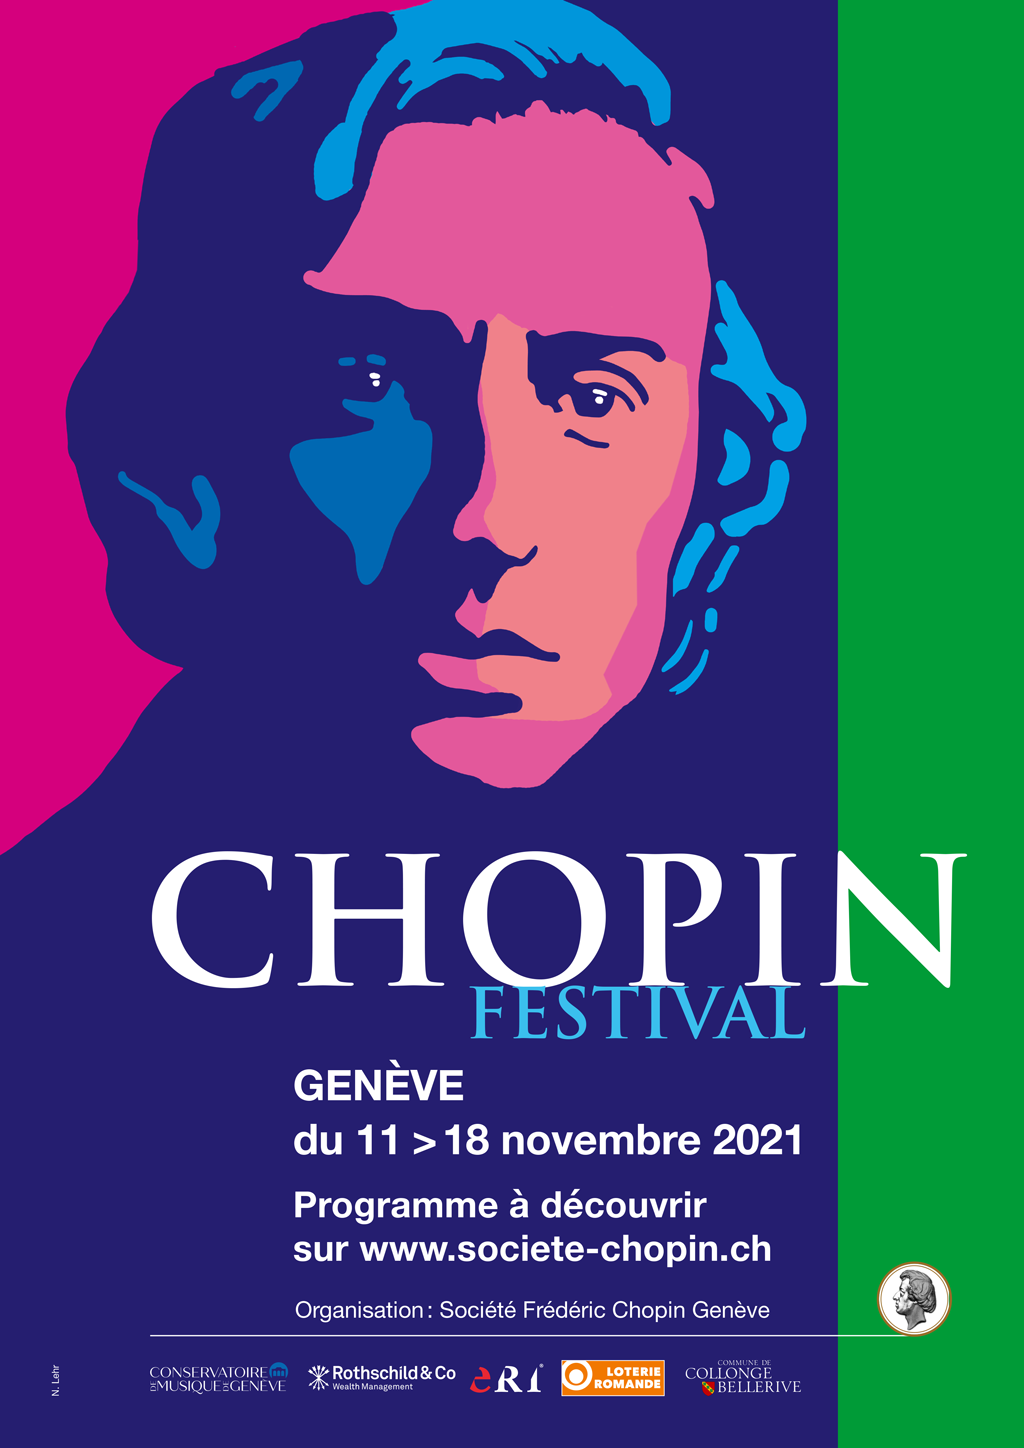 2021 Geneva Chopin Festival